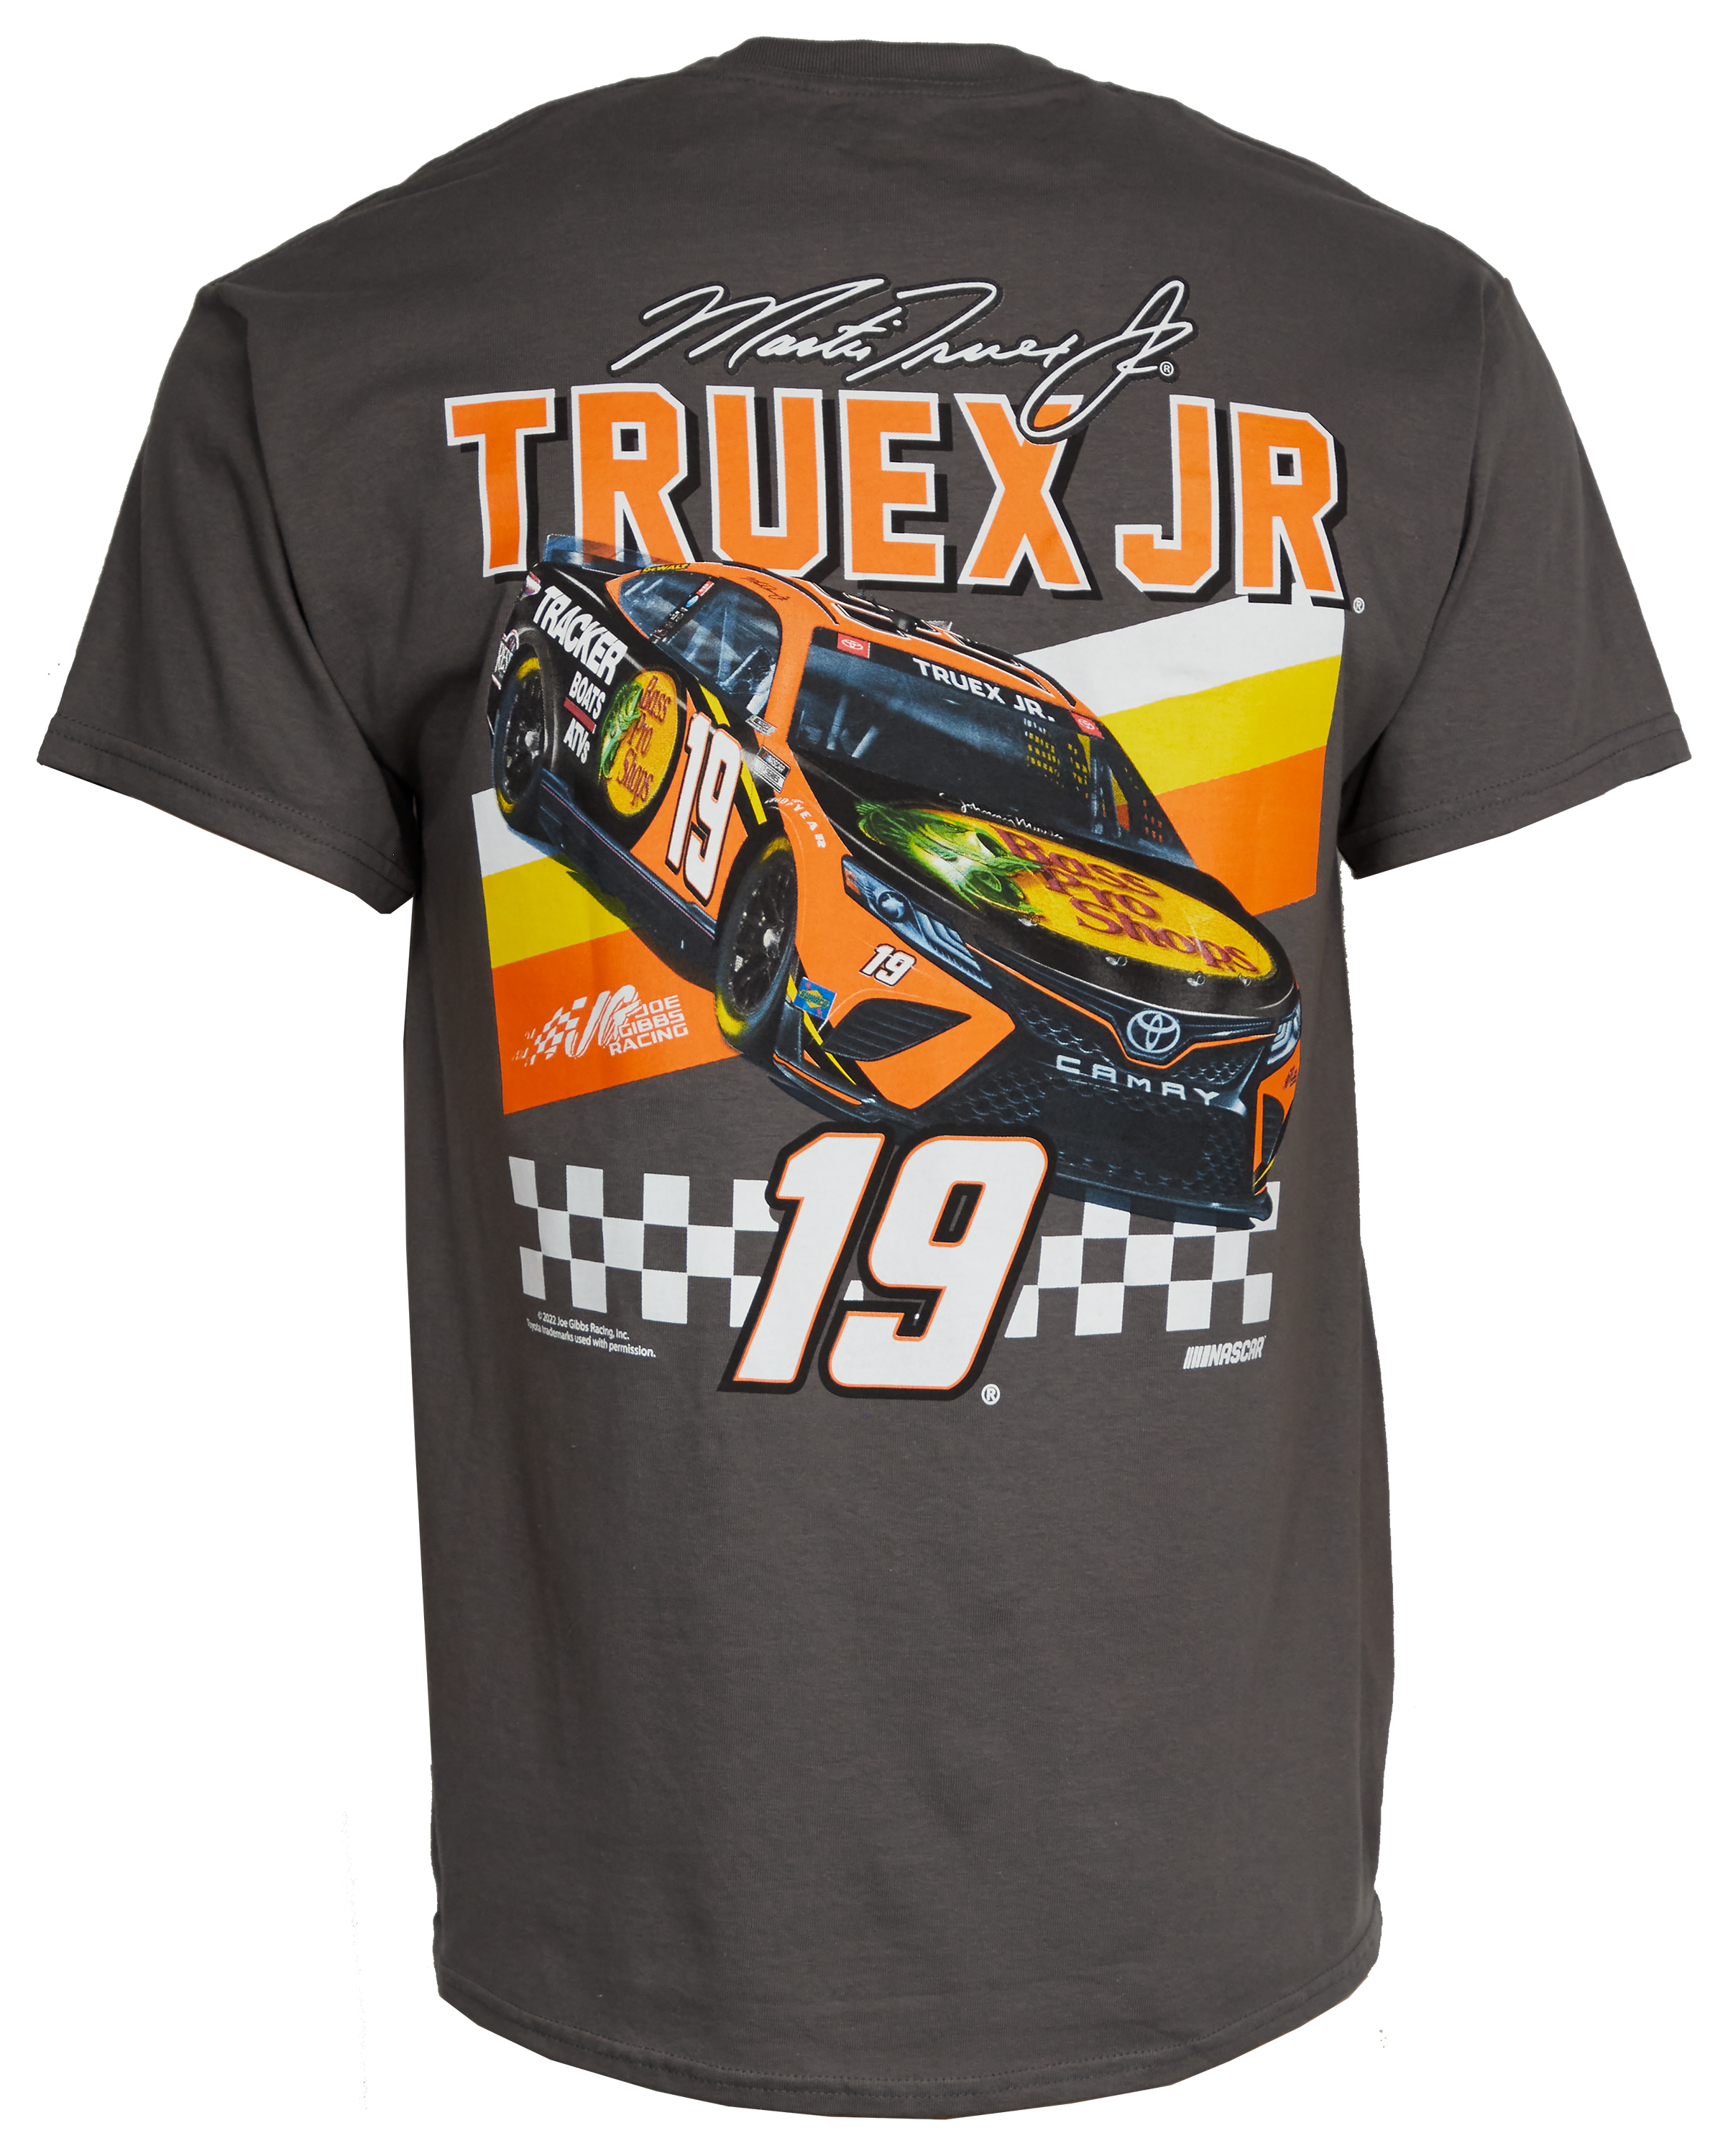 Bass Pro Shops NASCAR Martin Truex Jr. Front Runner Tee for Men - Charcoal - 2XL